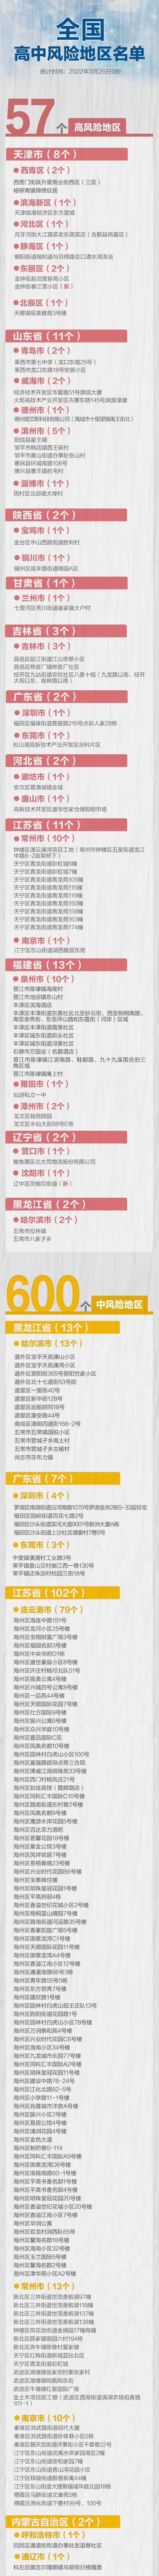 最新！郑州+5 全国现有高中风险区16+83个 - Blackjack - PeraPlay.Net 百度热点快讯